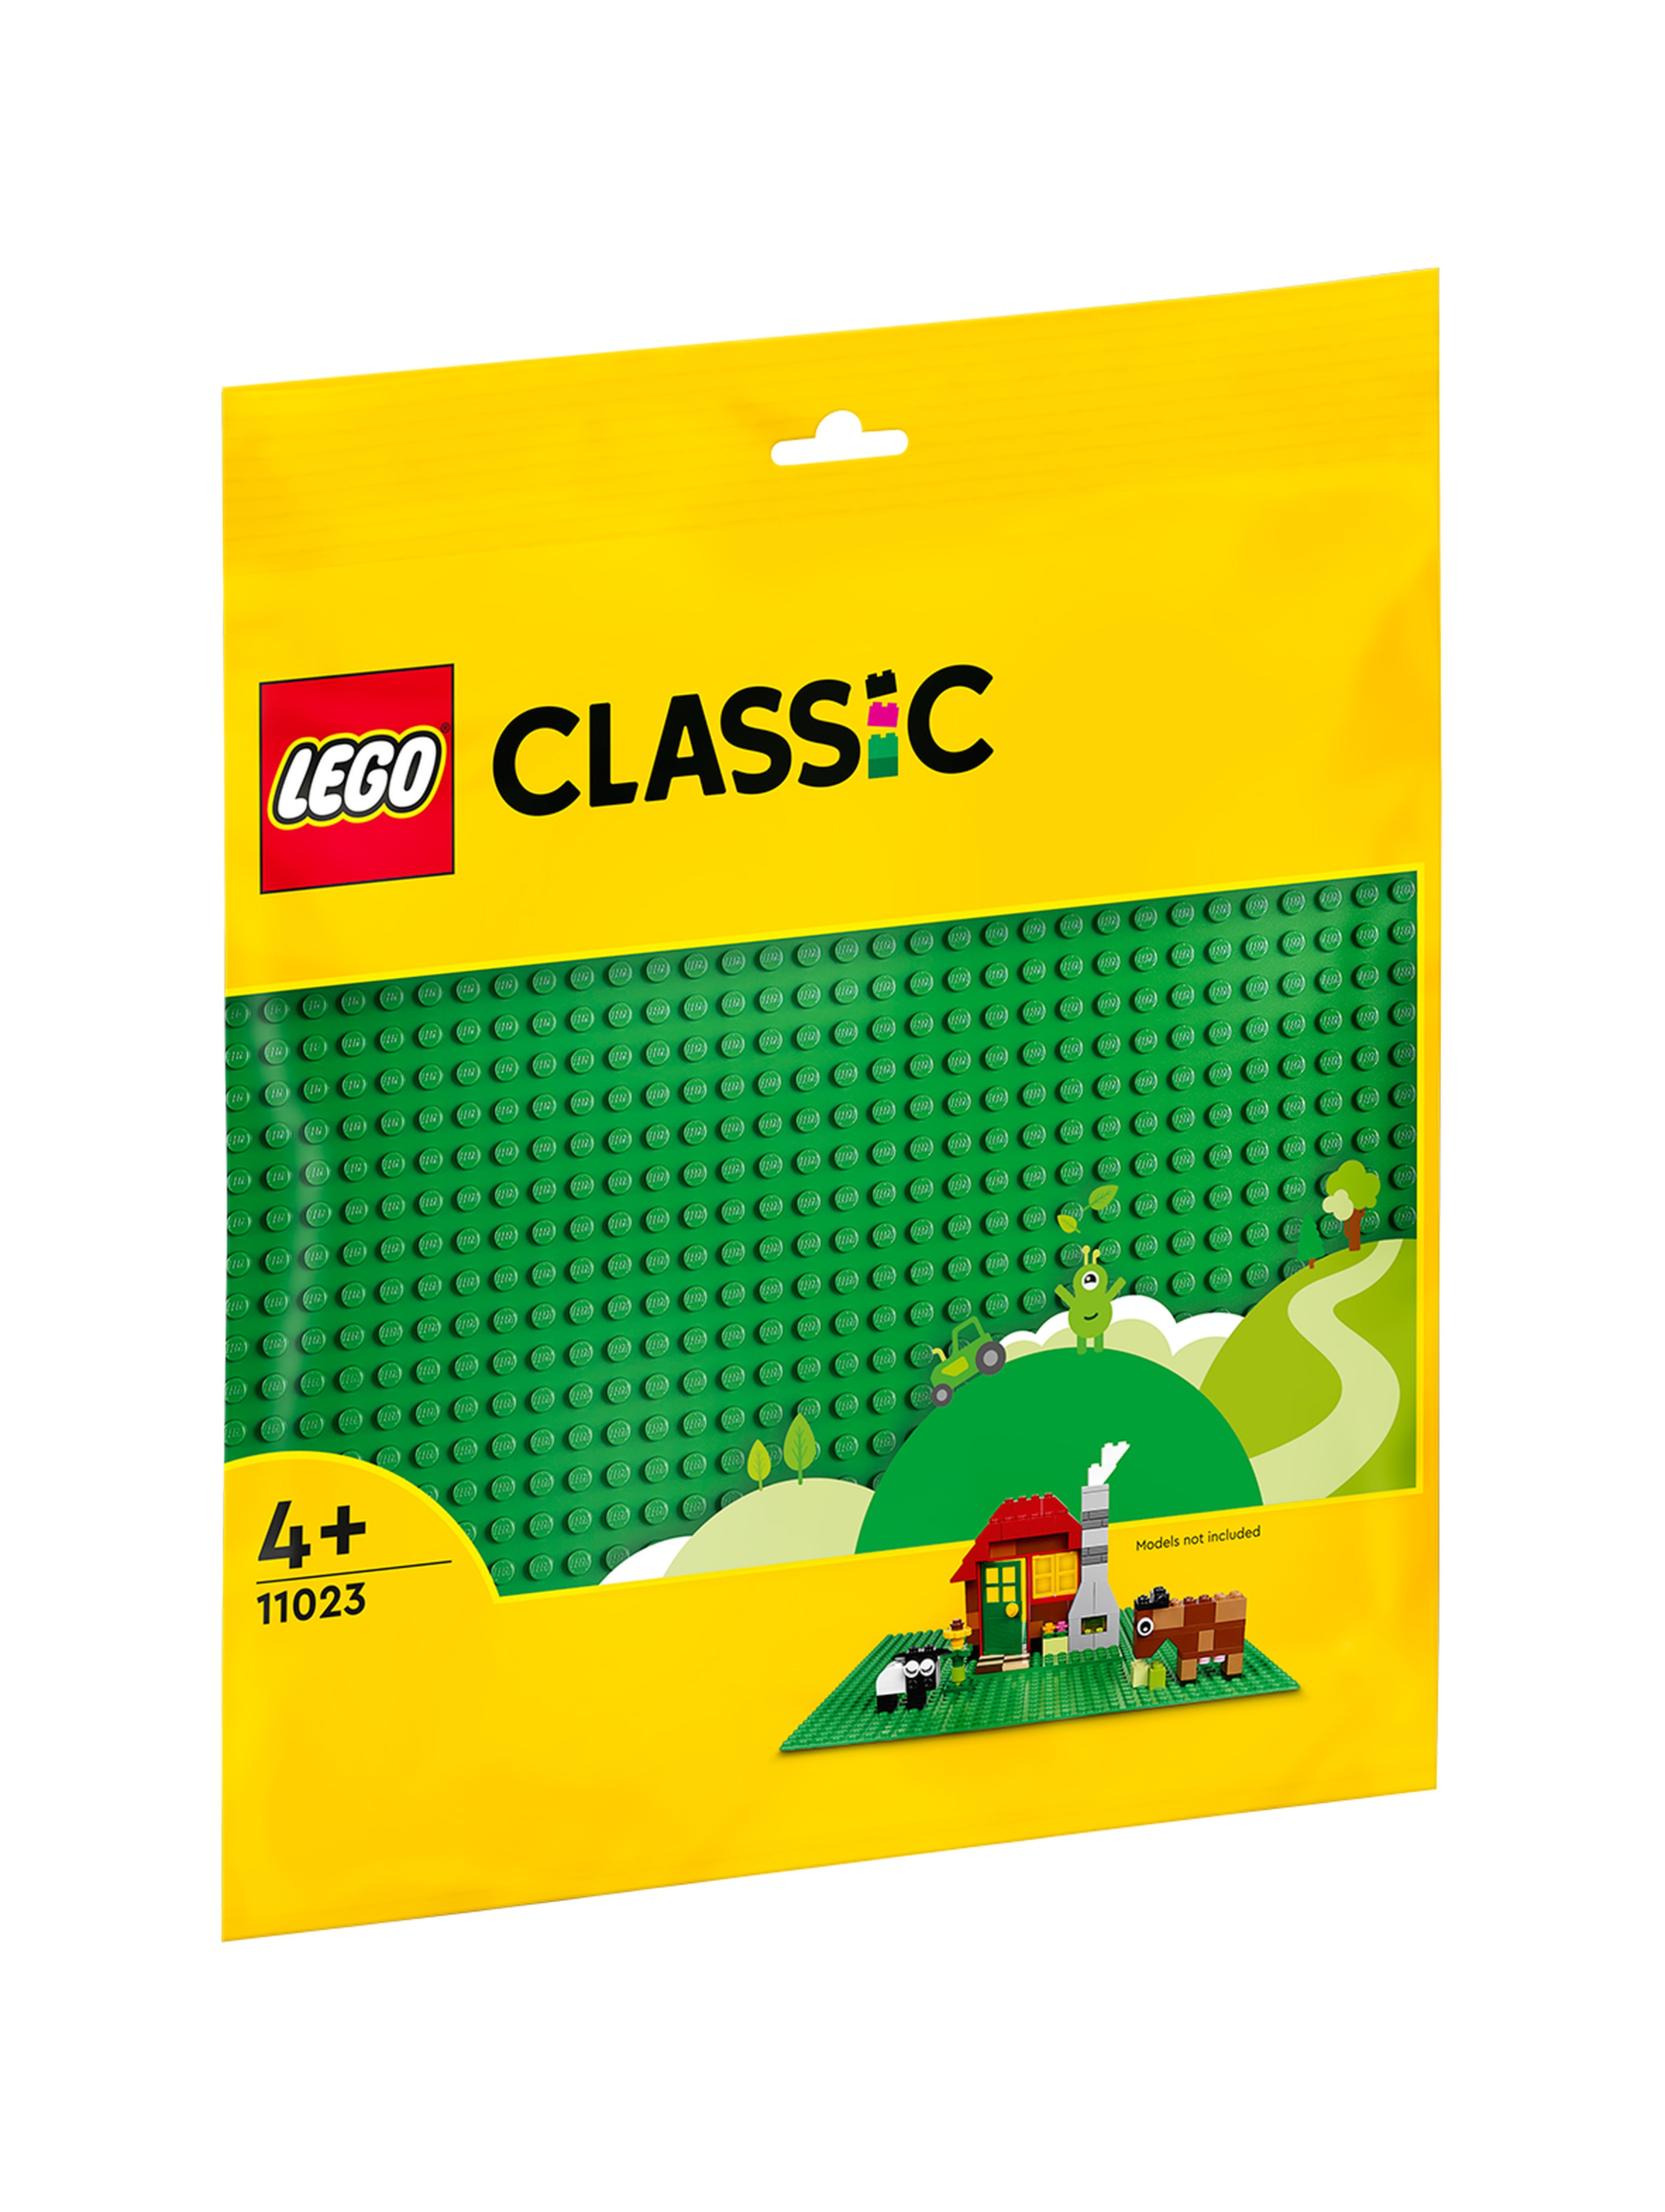 LEGO Classic - Zielona płytka konstrukcyjna 11023 - wiek 4+